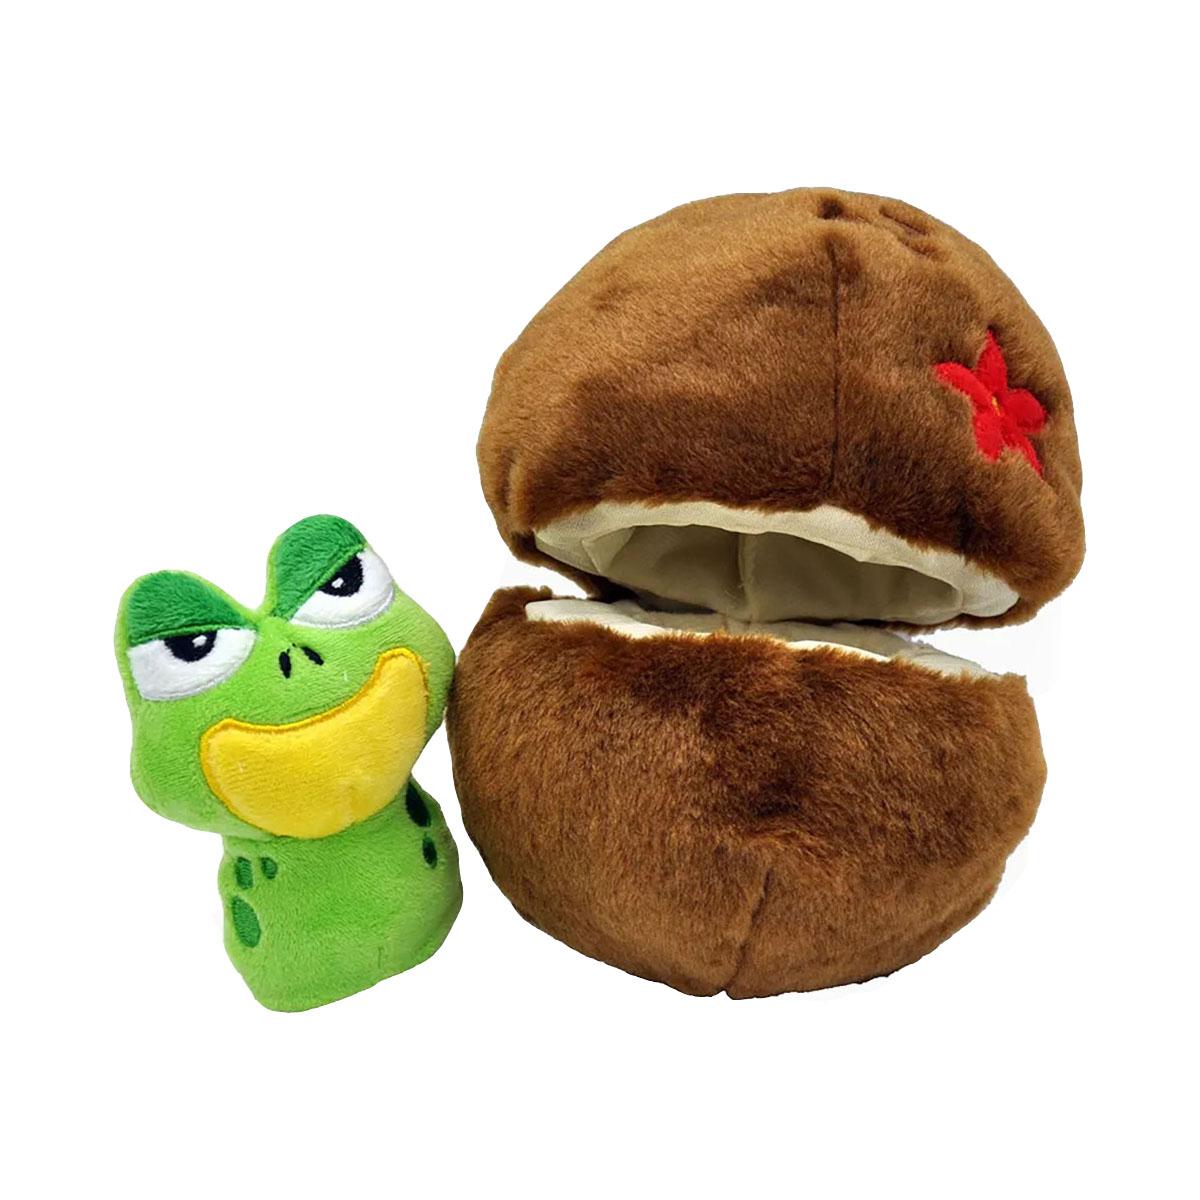 Cuddle Frog Plush Dog Toy